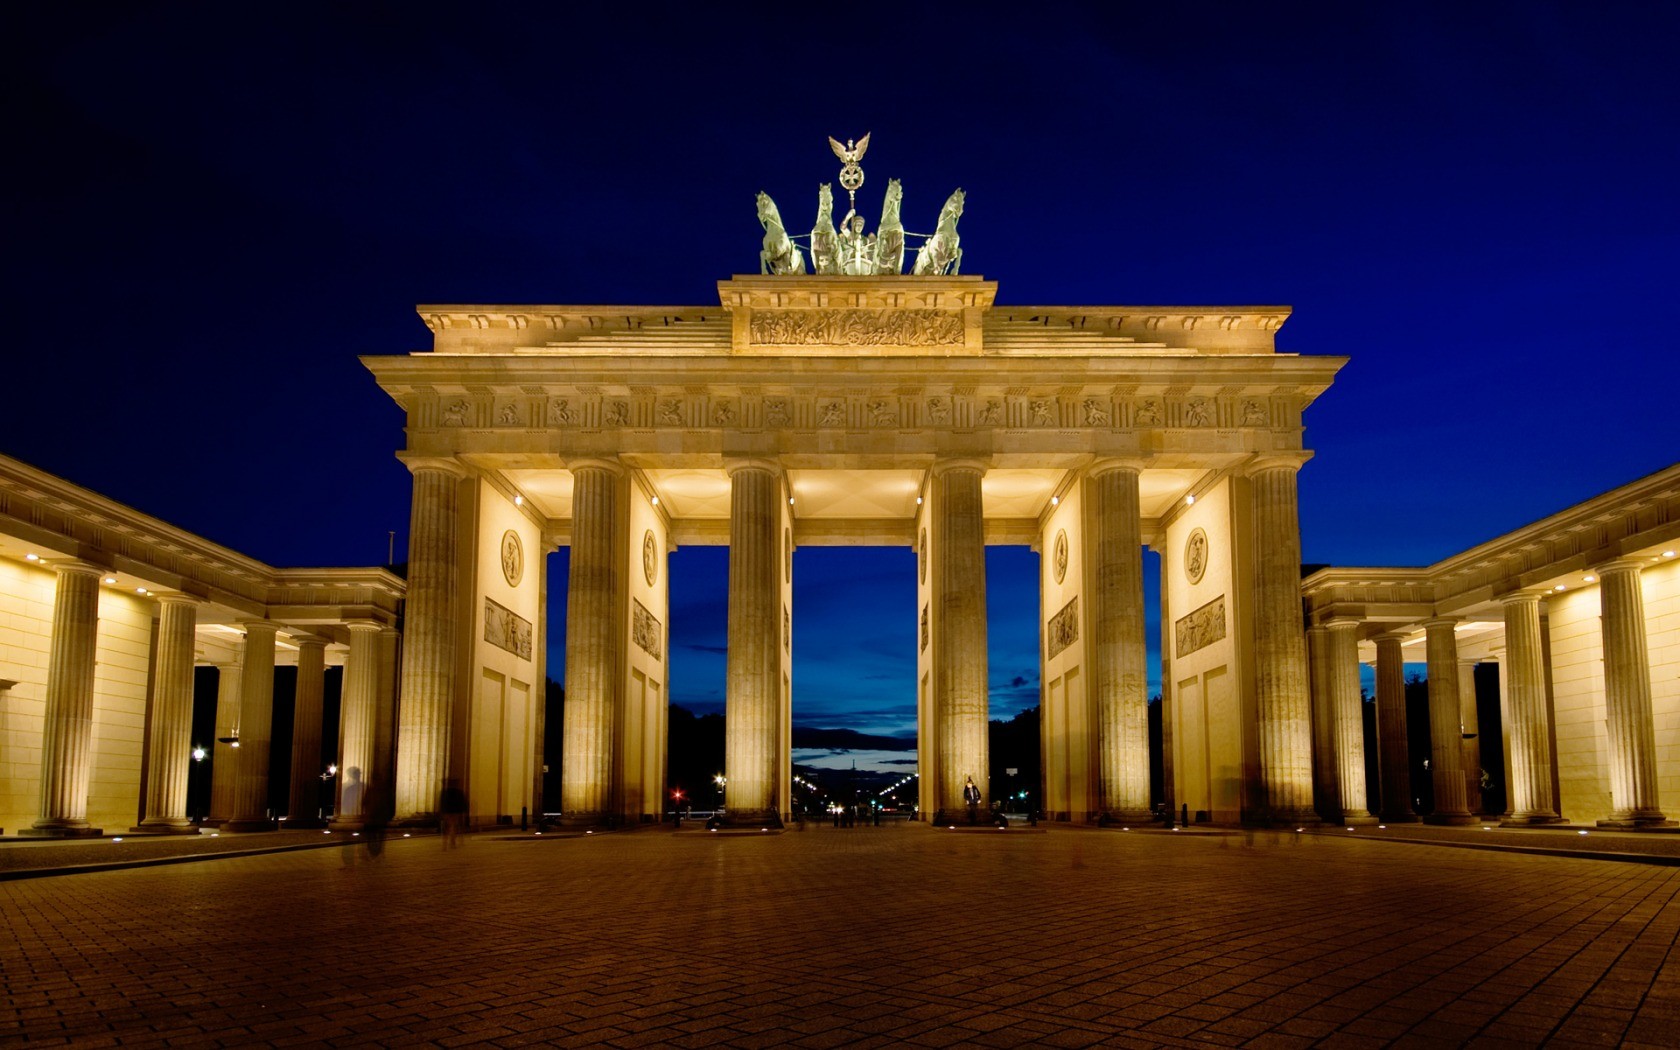 berlin, brandenburg gate, man made, cityscape, monuments wallpaper for mobile